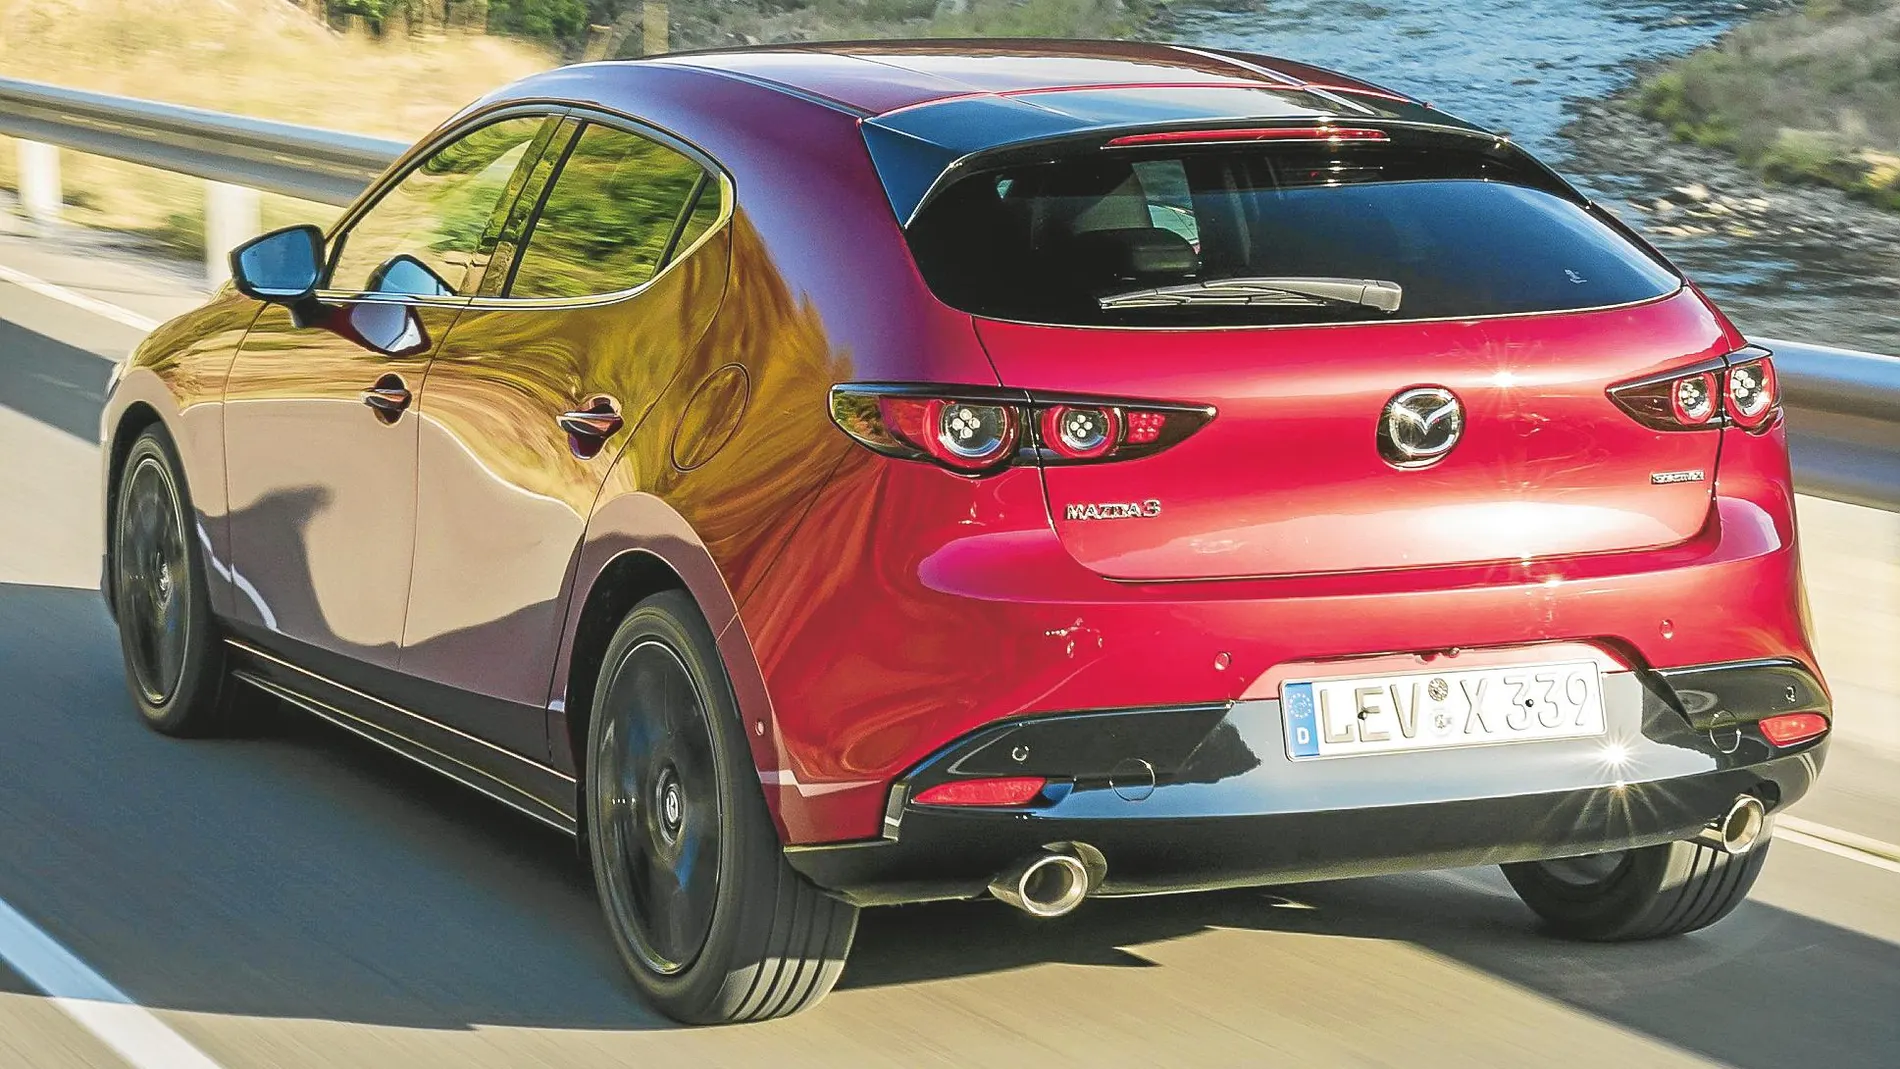 Con estas innovaciones el consumo medio de carburante del Mazda 3 se sitúa en menos de 4,5 litros a los 100 kms